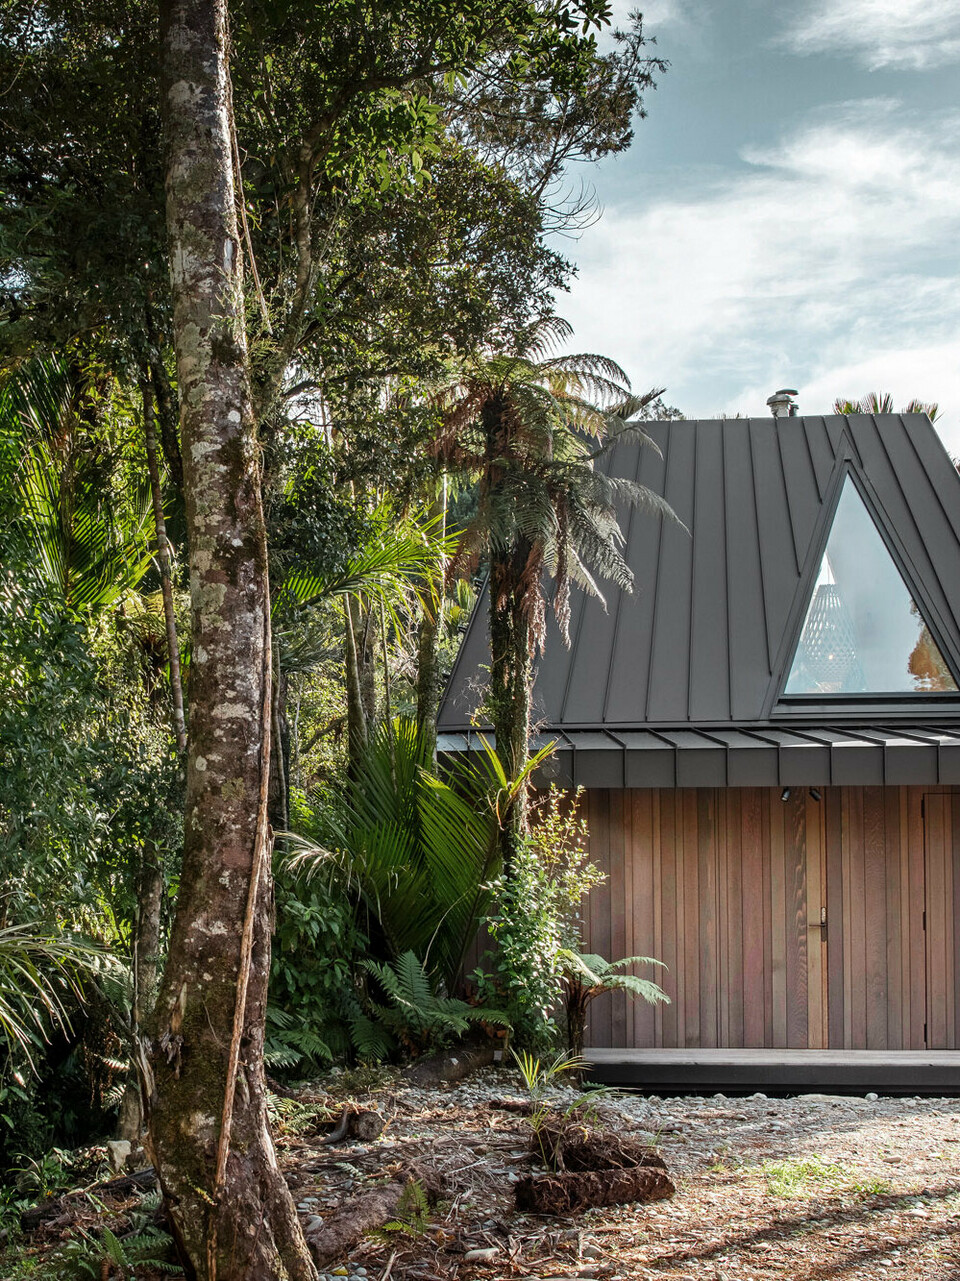 Seitlicher Blick auf das von Fabric realisierte Biwak mit dem ausgefallenen, schwarzgrauen Prefalz Dach, das sich zwischen Nikau-Palmen im Punakaiki Urwald versteckt.